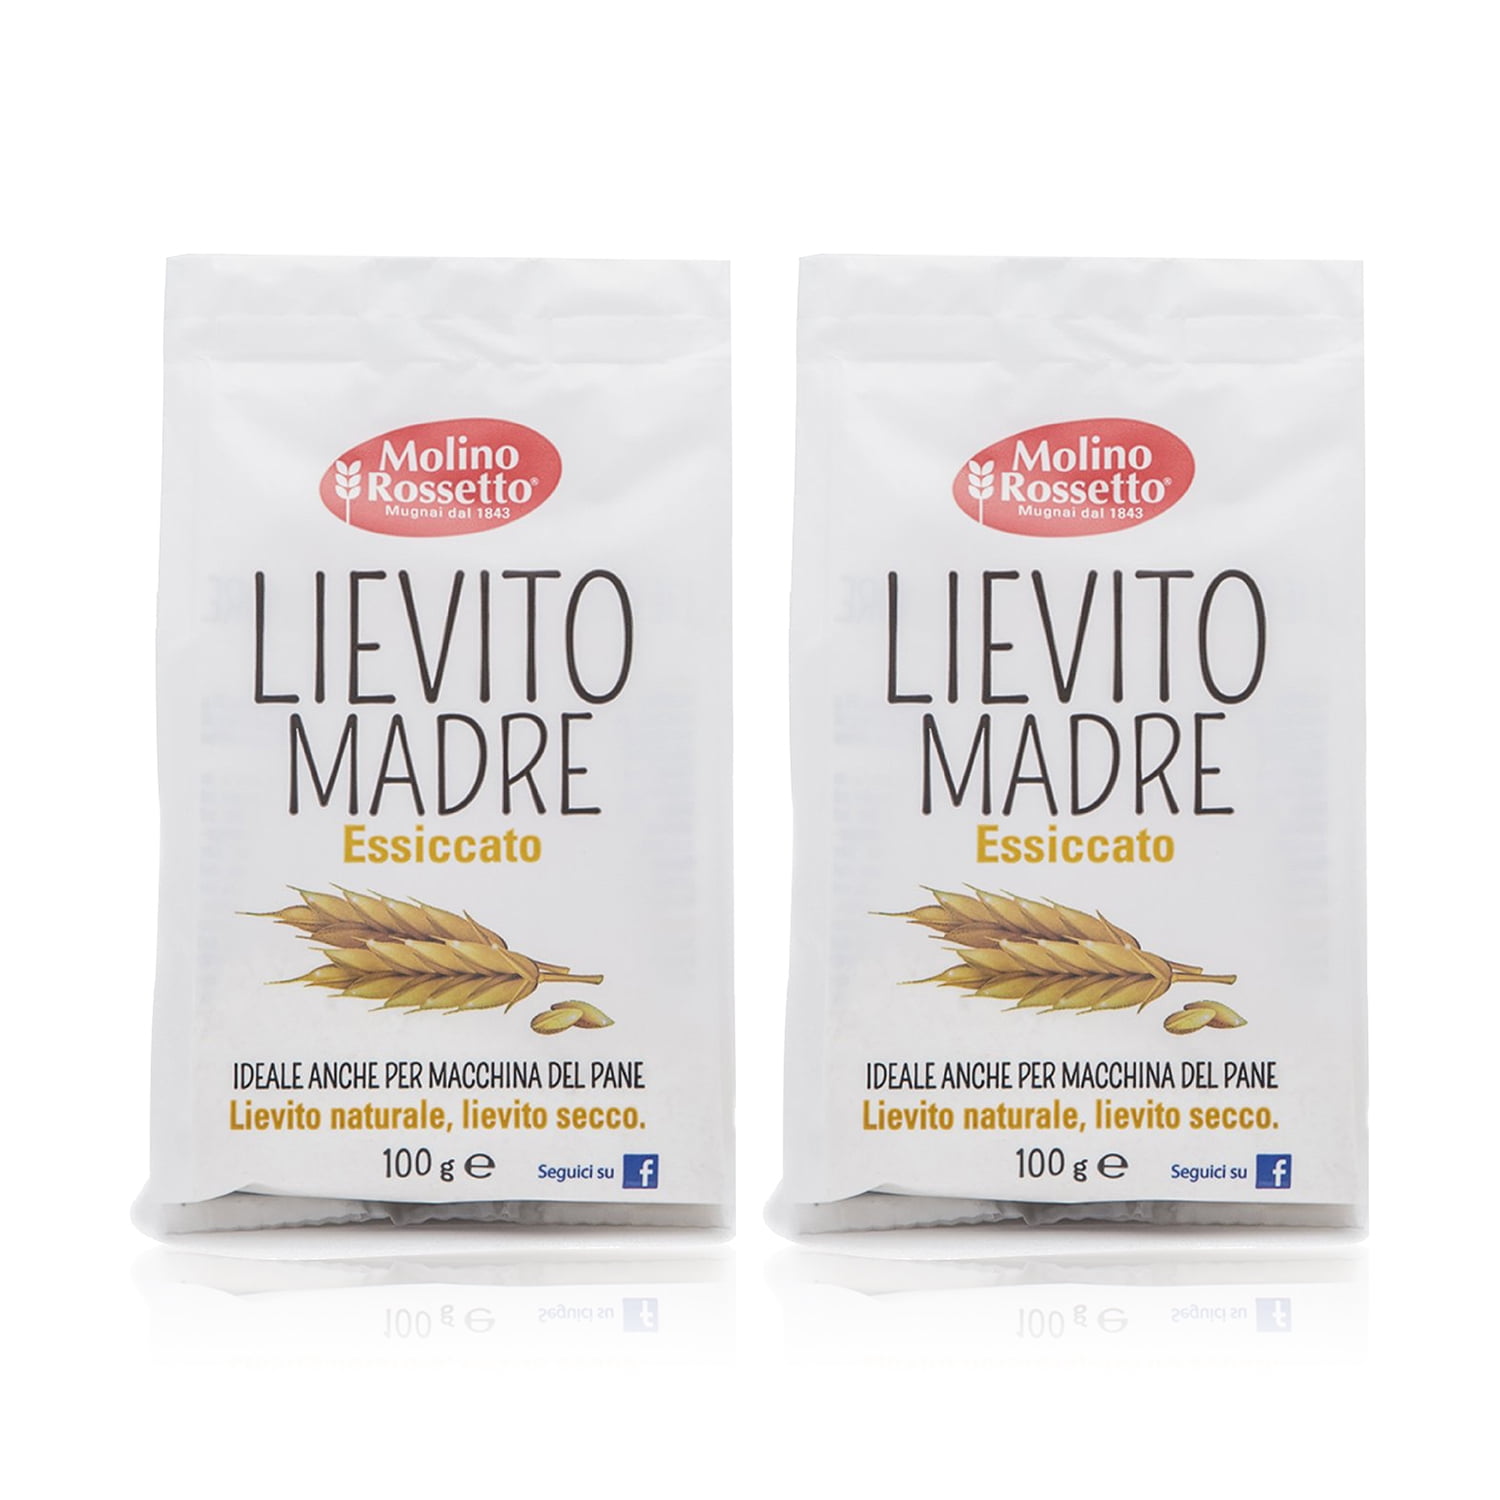 Molino Rossetto Lievito Madre Essiccato - Italian Dried Mother